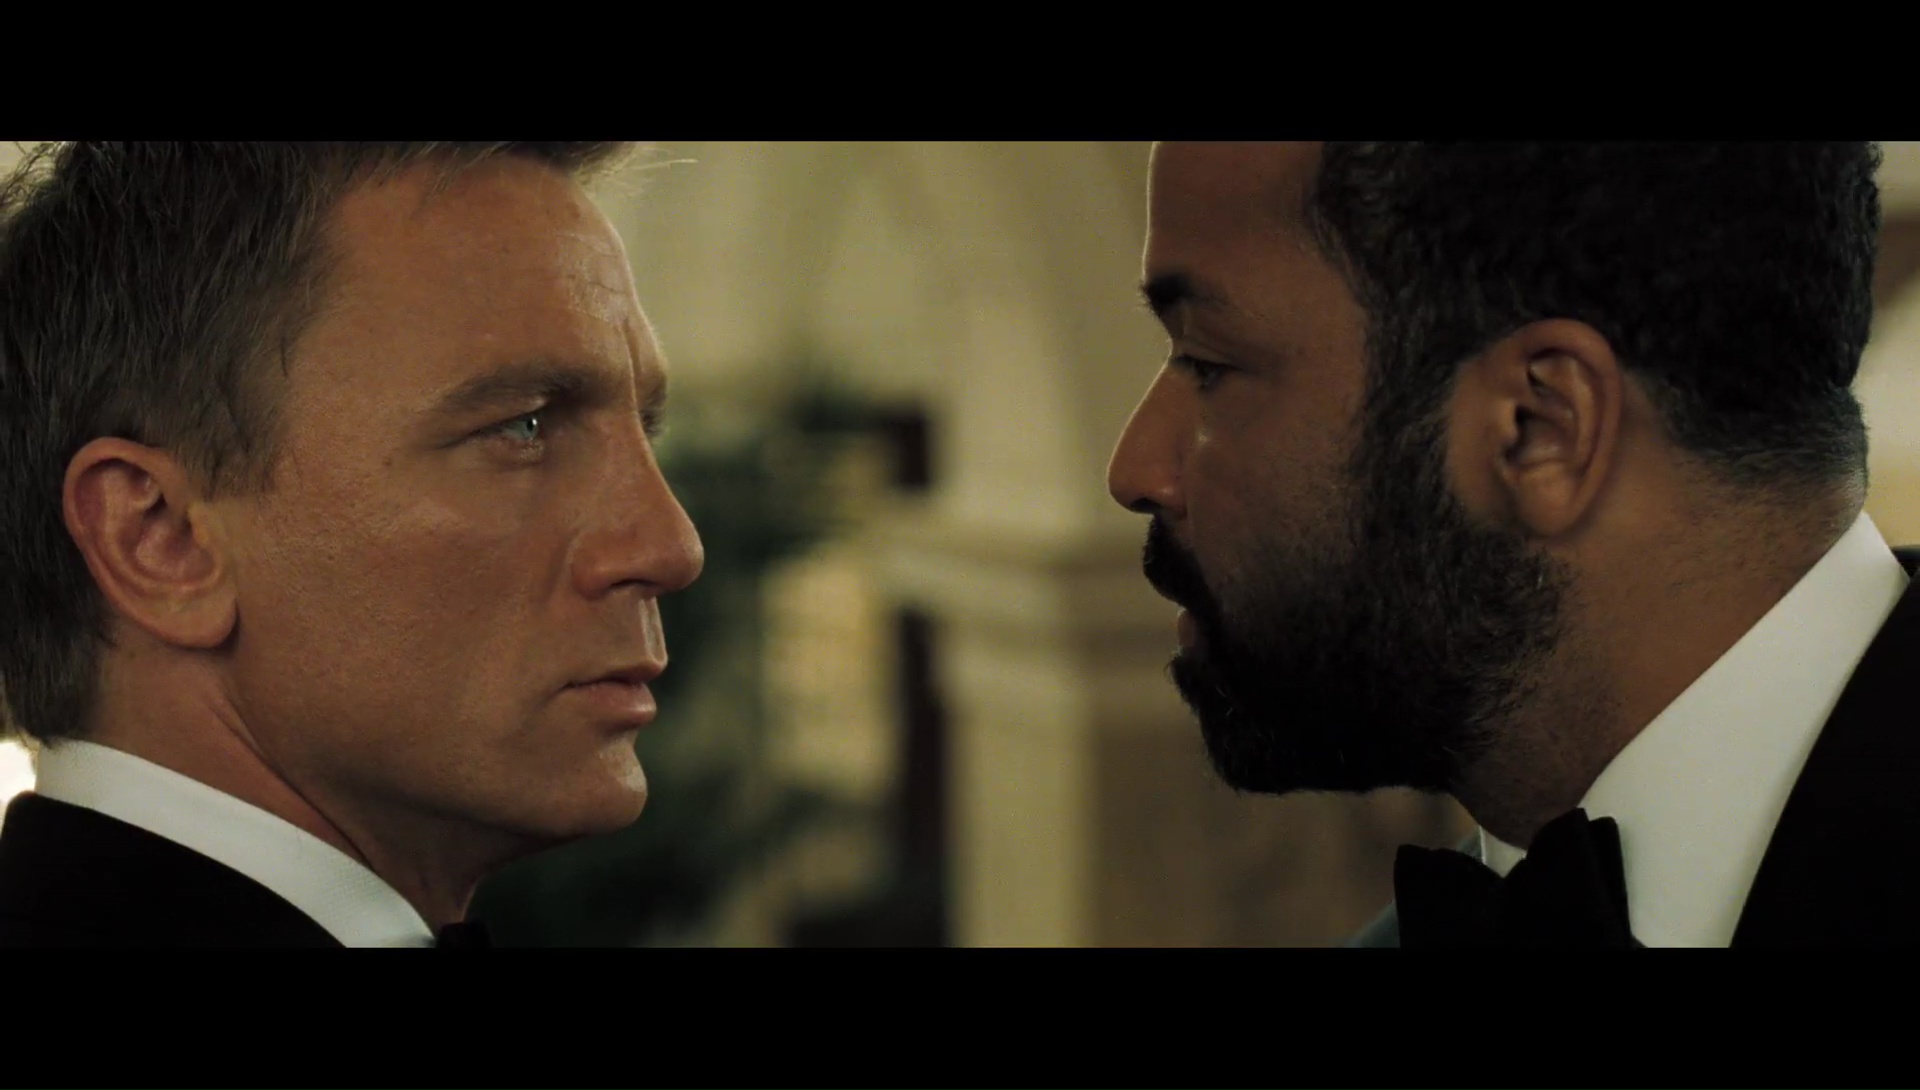 007 Casino Royale 1080p Lat-Cast-Ing 5.1 (2006) NrxwXESp_o